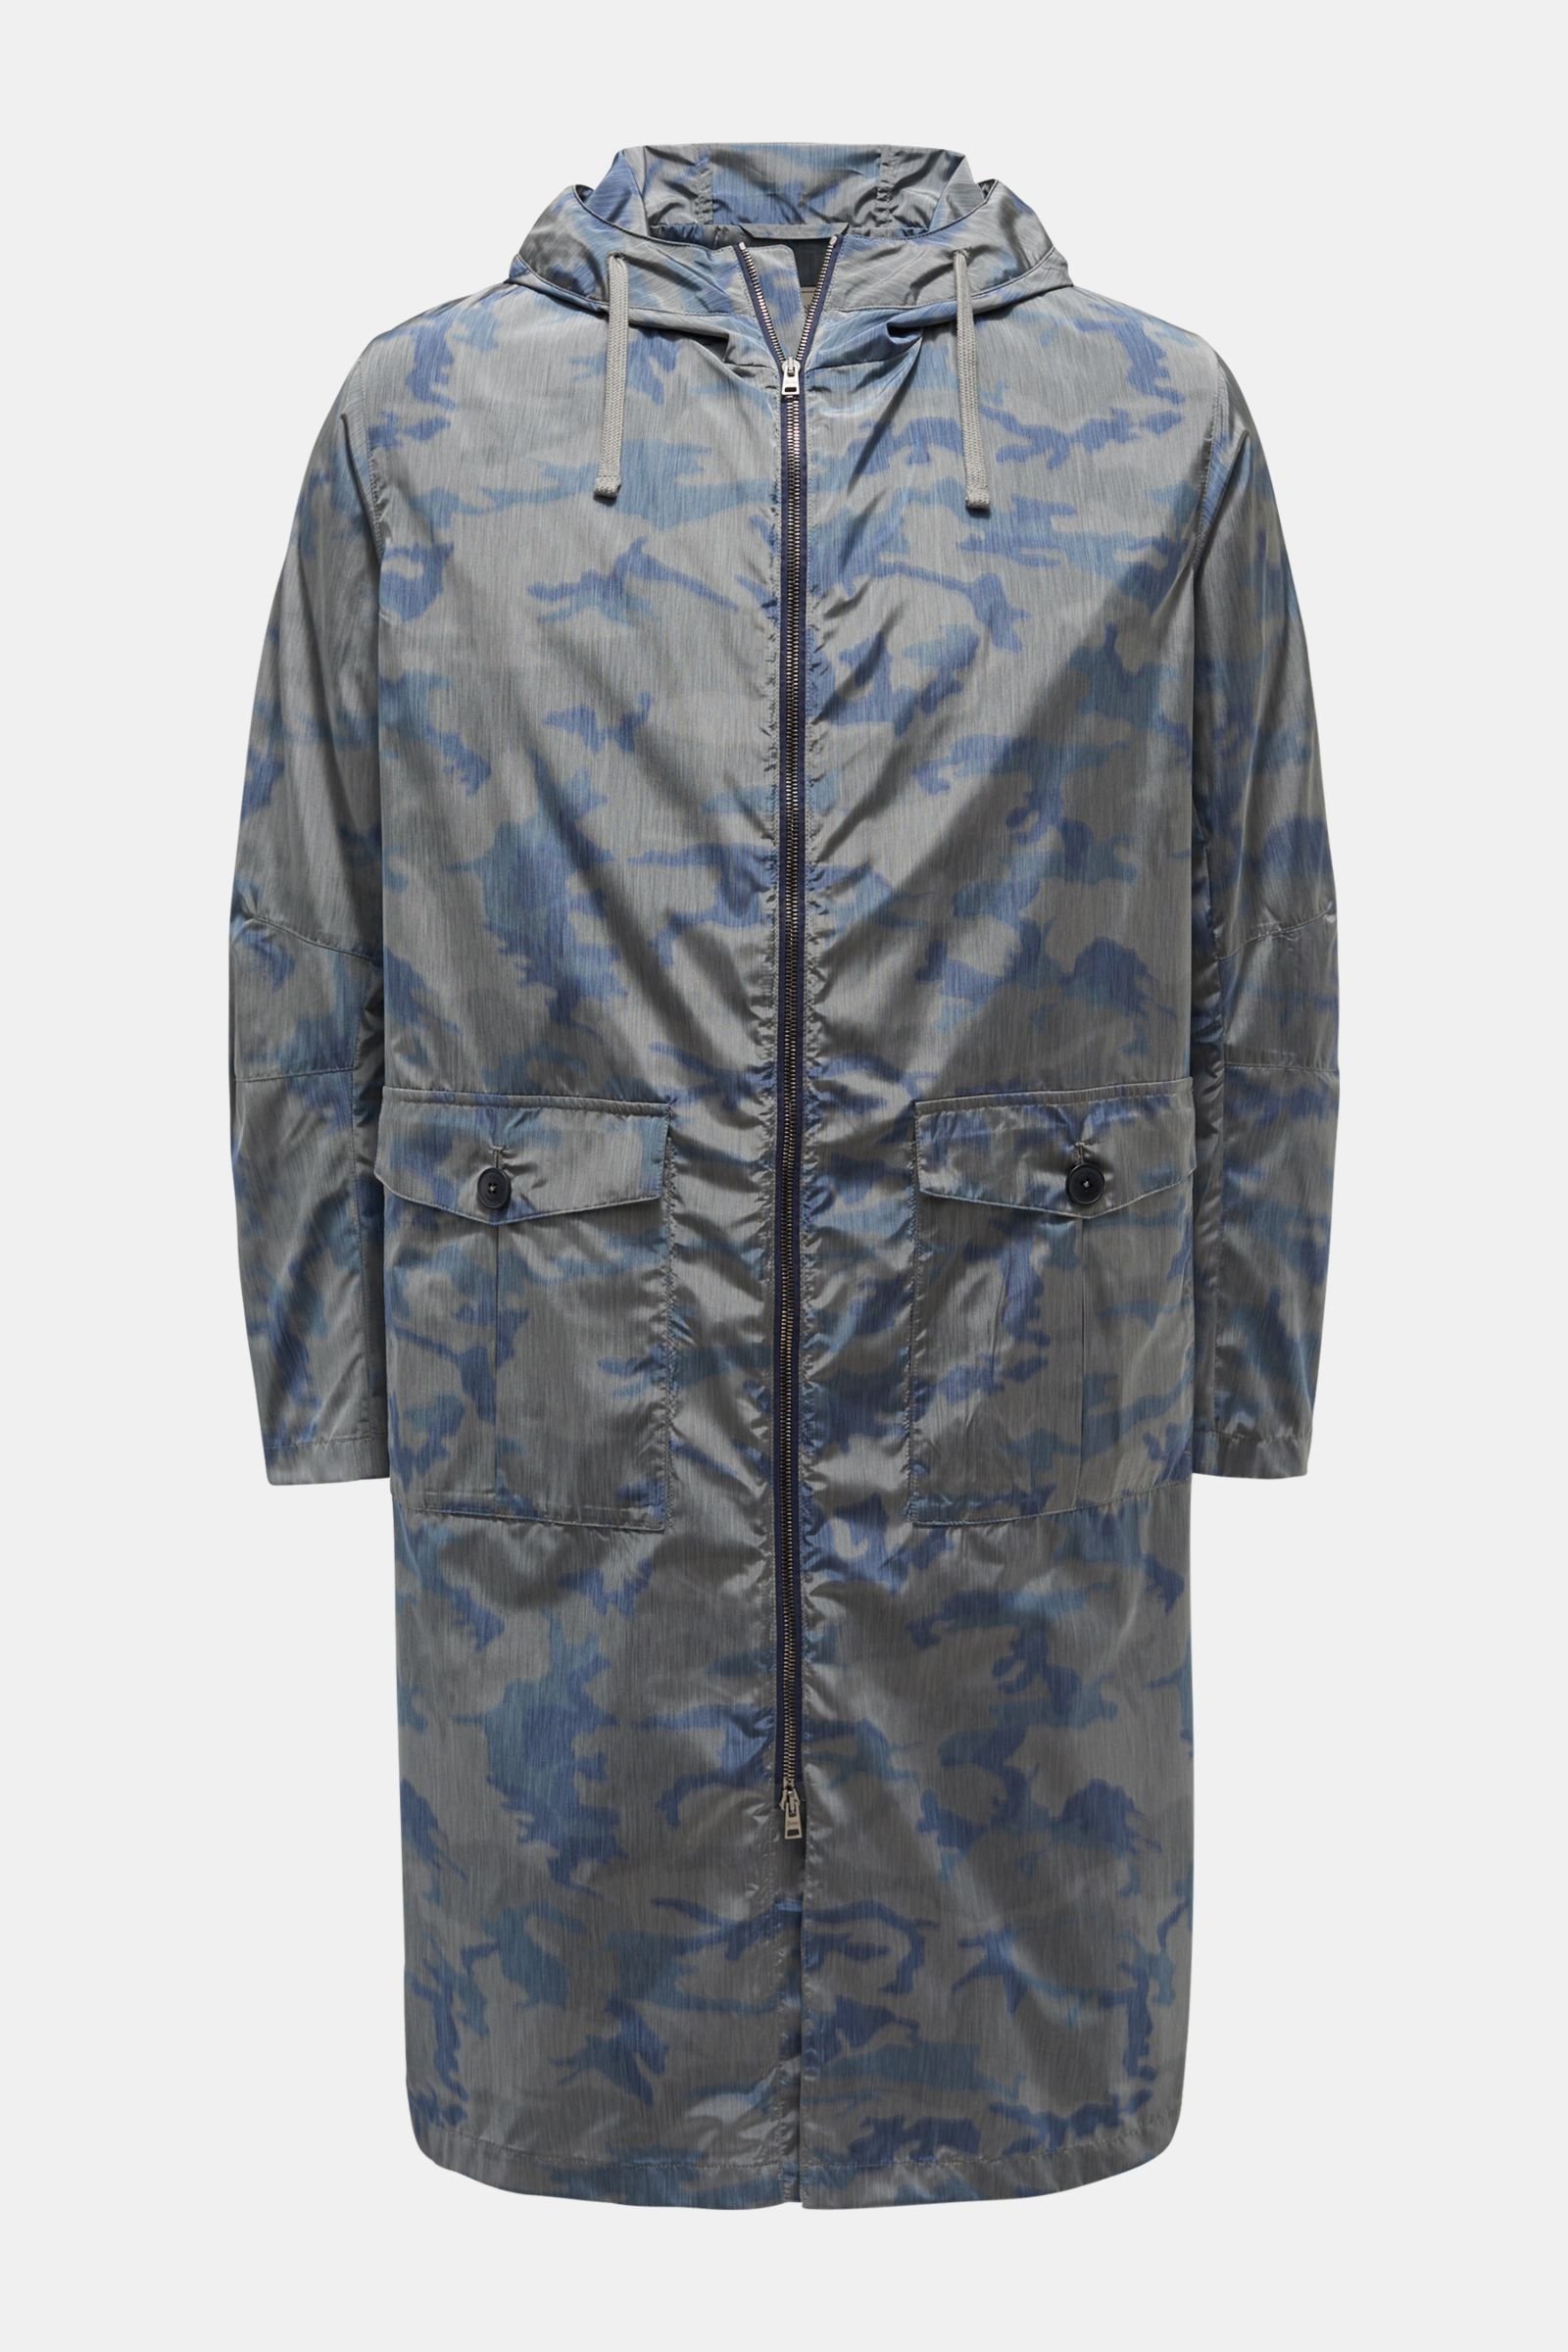 Coat grey-blue/dark blue patterned